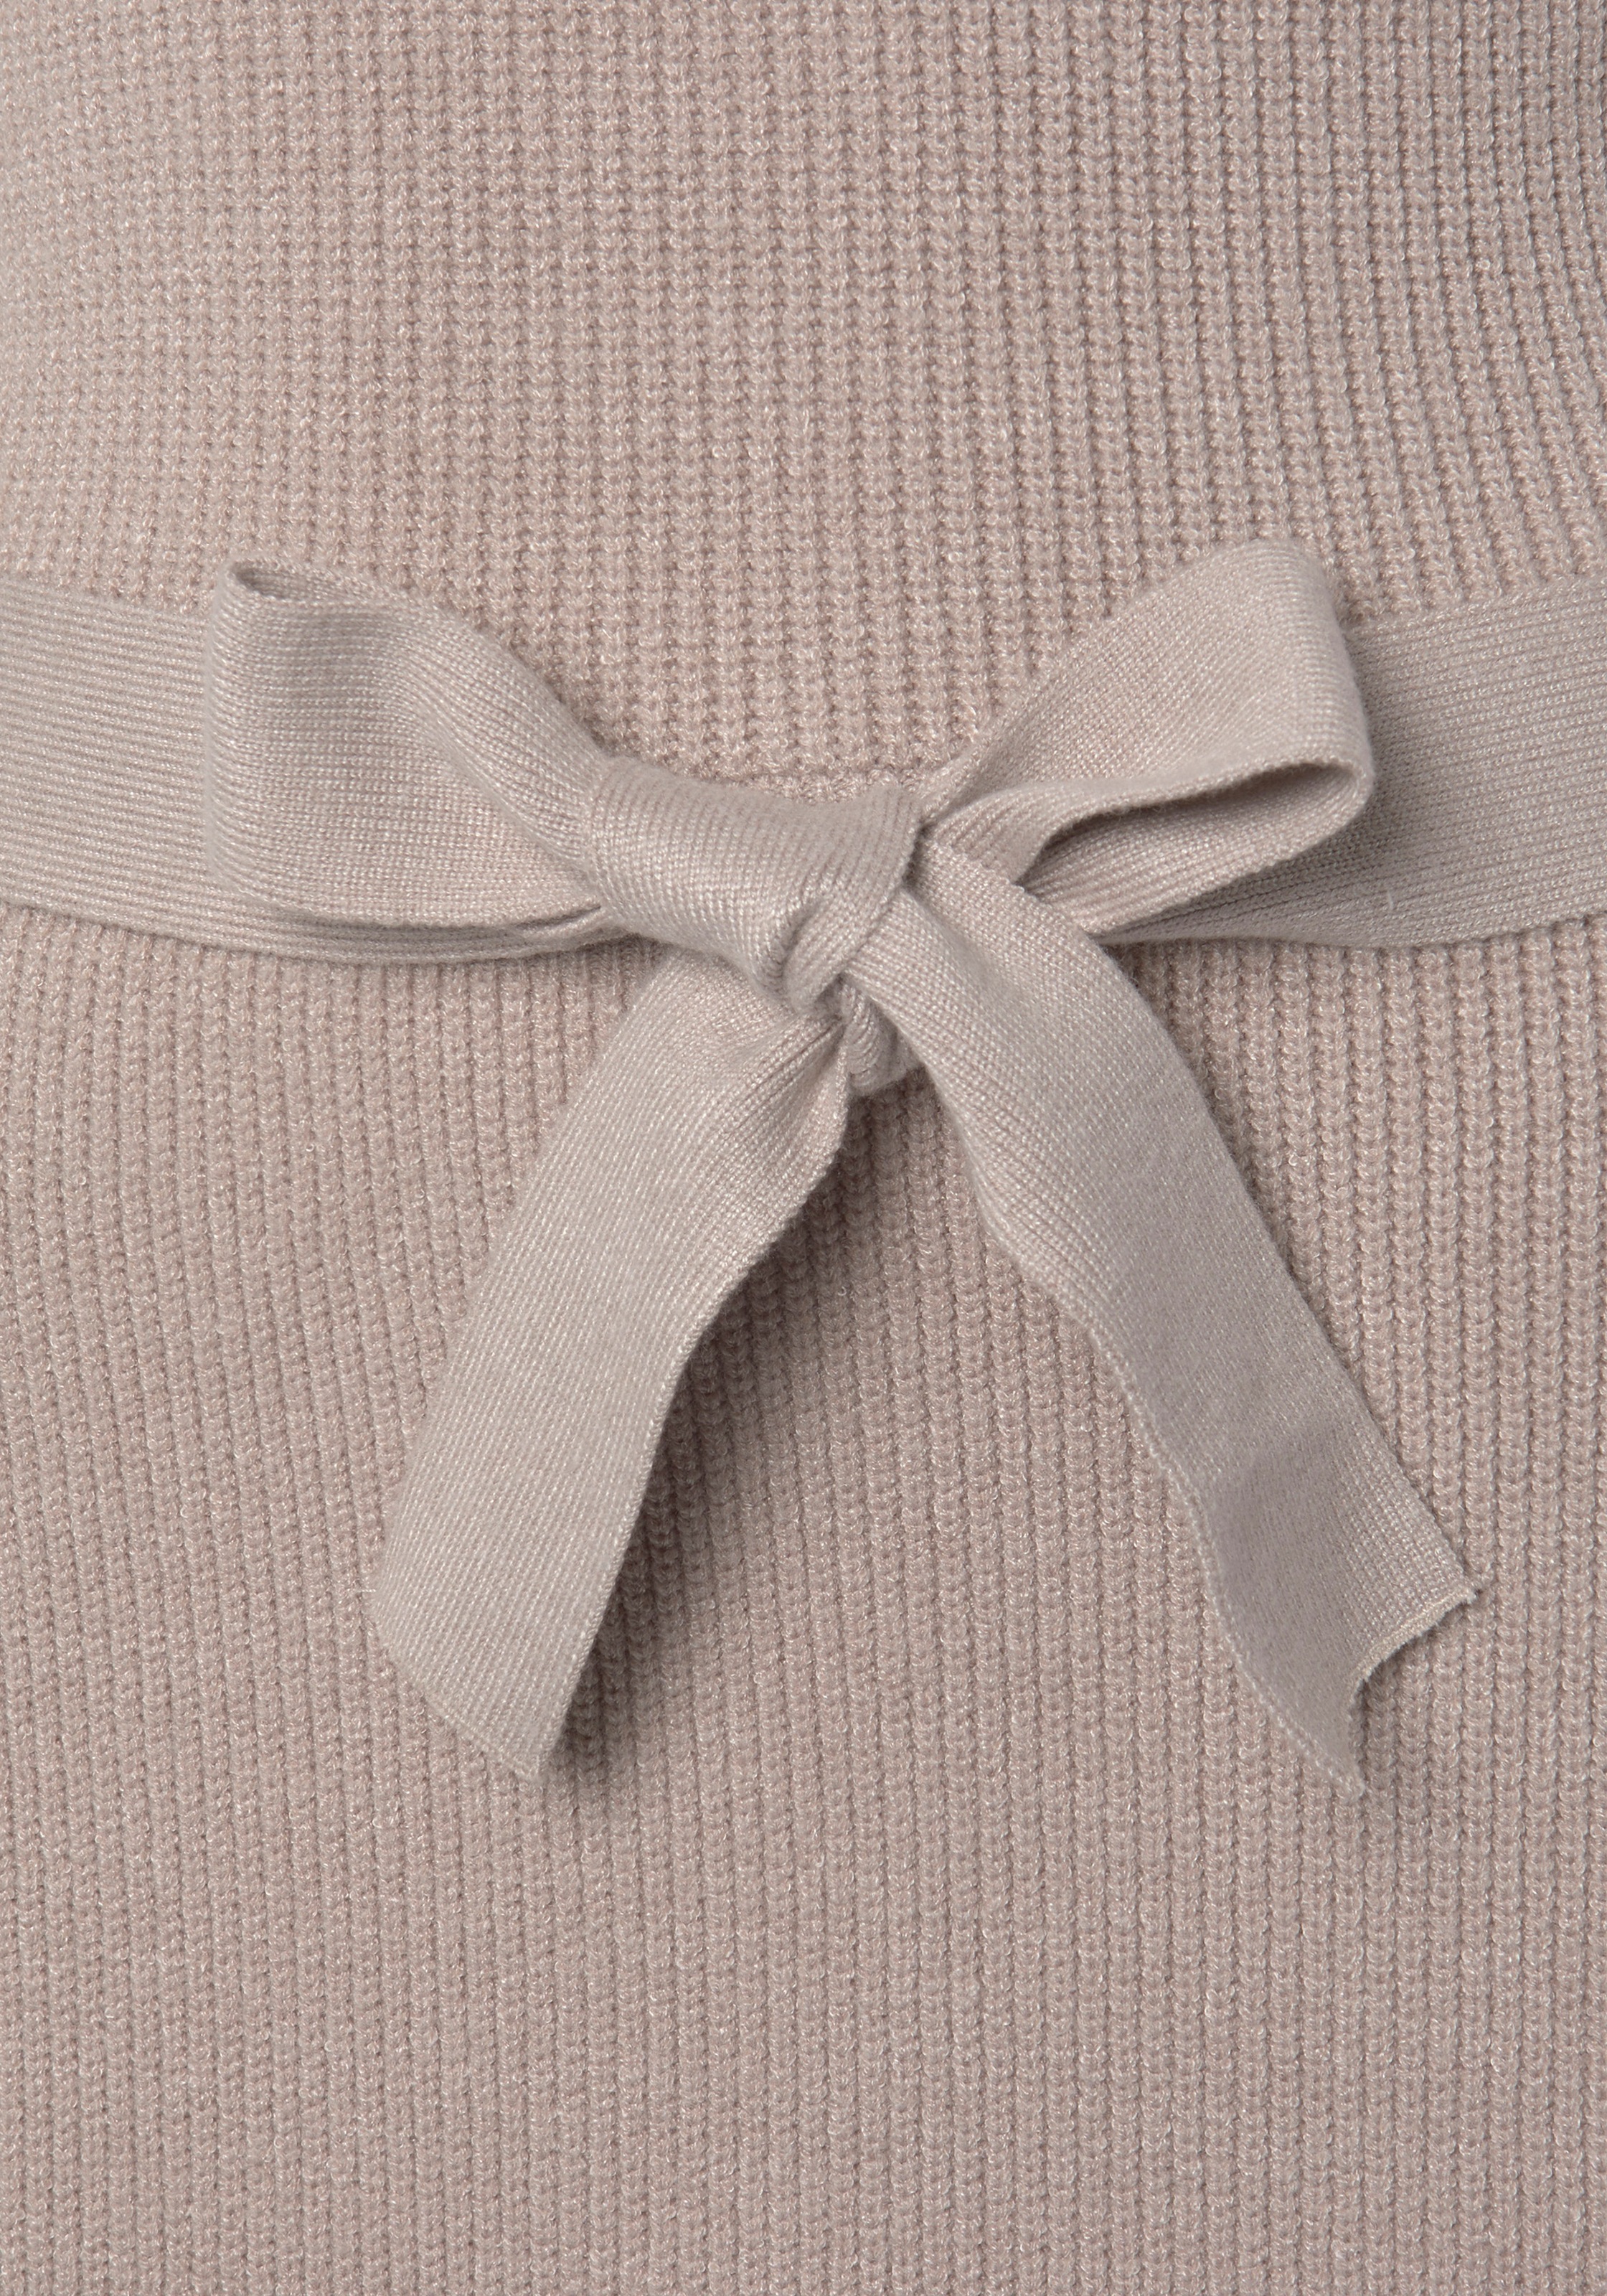 LASCANA Strickkleid, (mit Bindegürtel), und V-Ausschnitt, Herbst- Winterkleid, casual-elegant